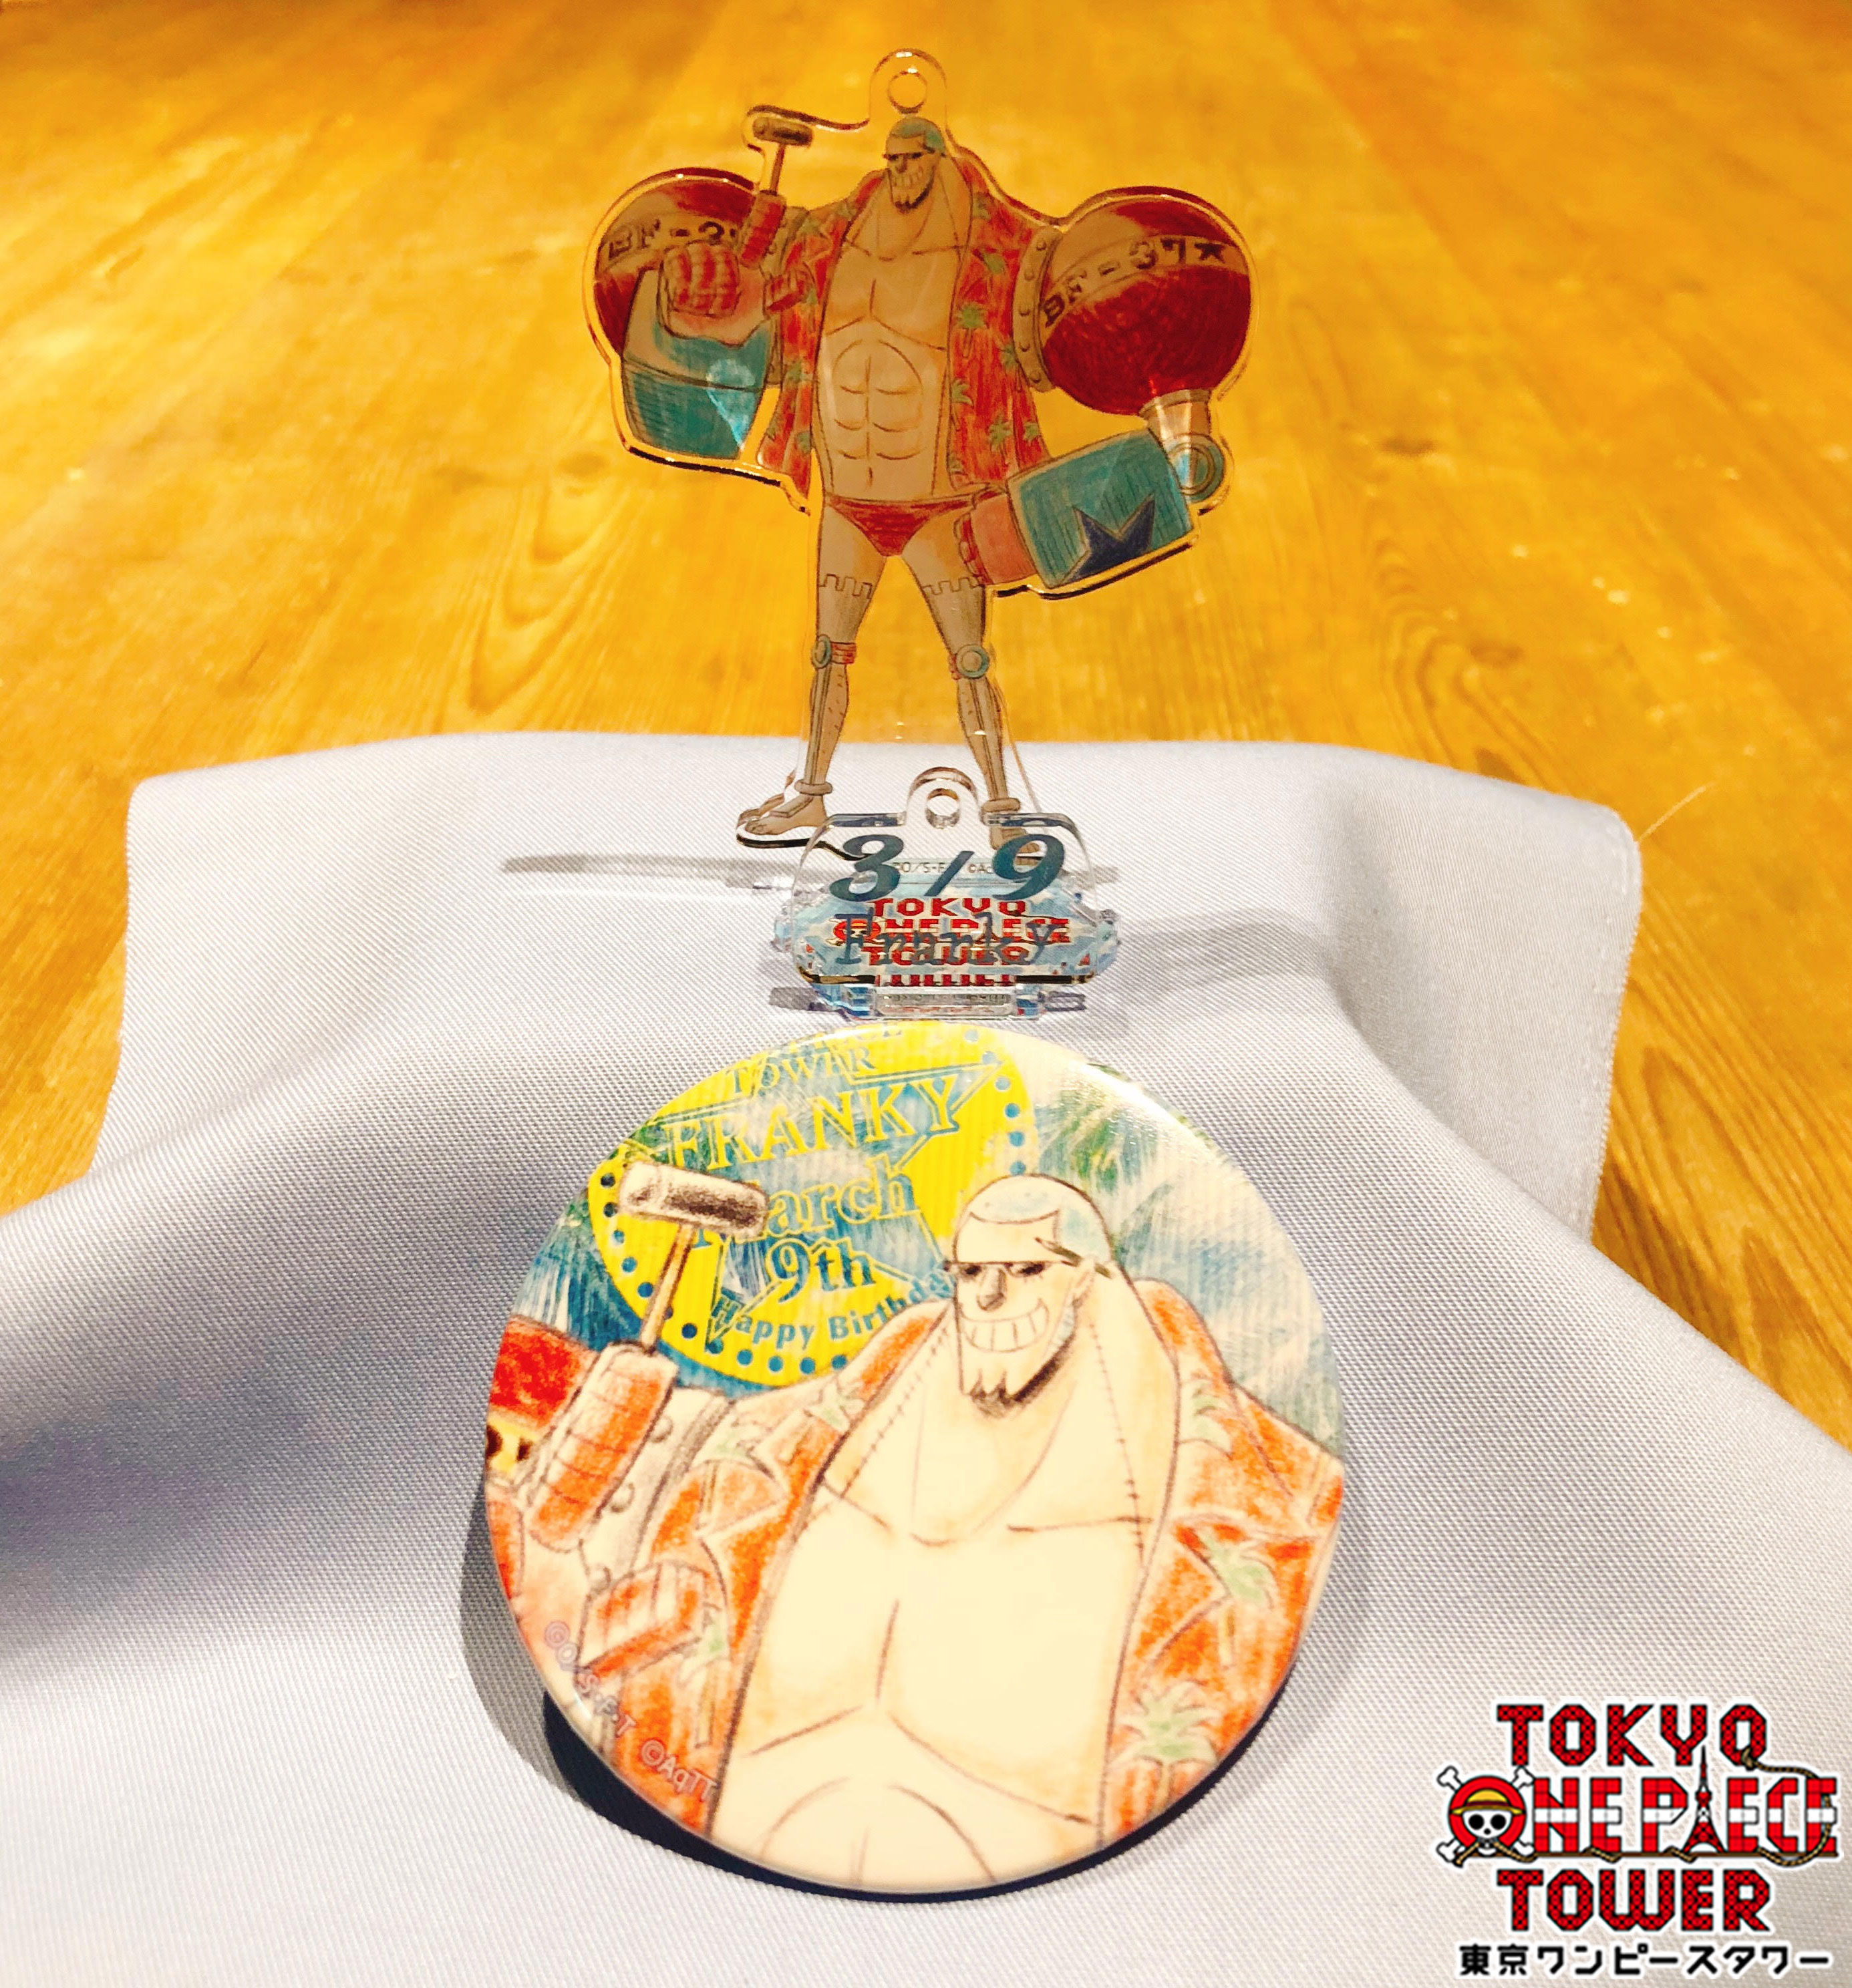 One Piece Com ワンピース على تويتر 3月9日は 麦わらの一味 フランキー の誕生日 ハッシュタグをつけてお祝いしよう フランキーのグッズは 麦わらストア Jump Shopで好評発売中 Onepiece ワンピース フランキー フランキー誕生日おめでとう T